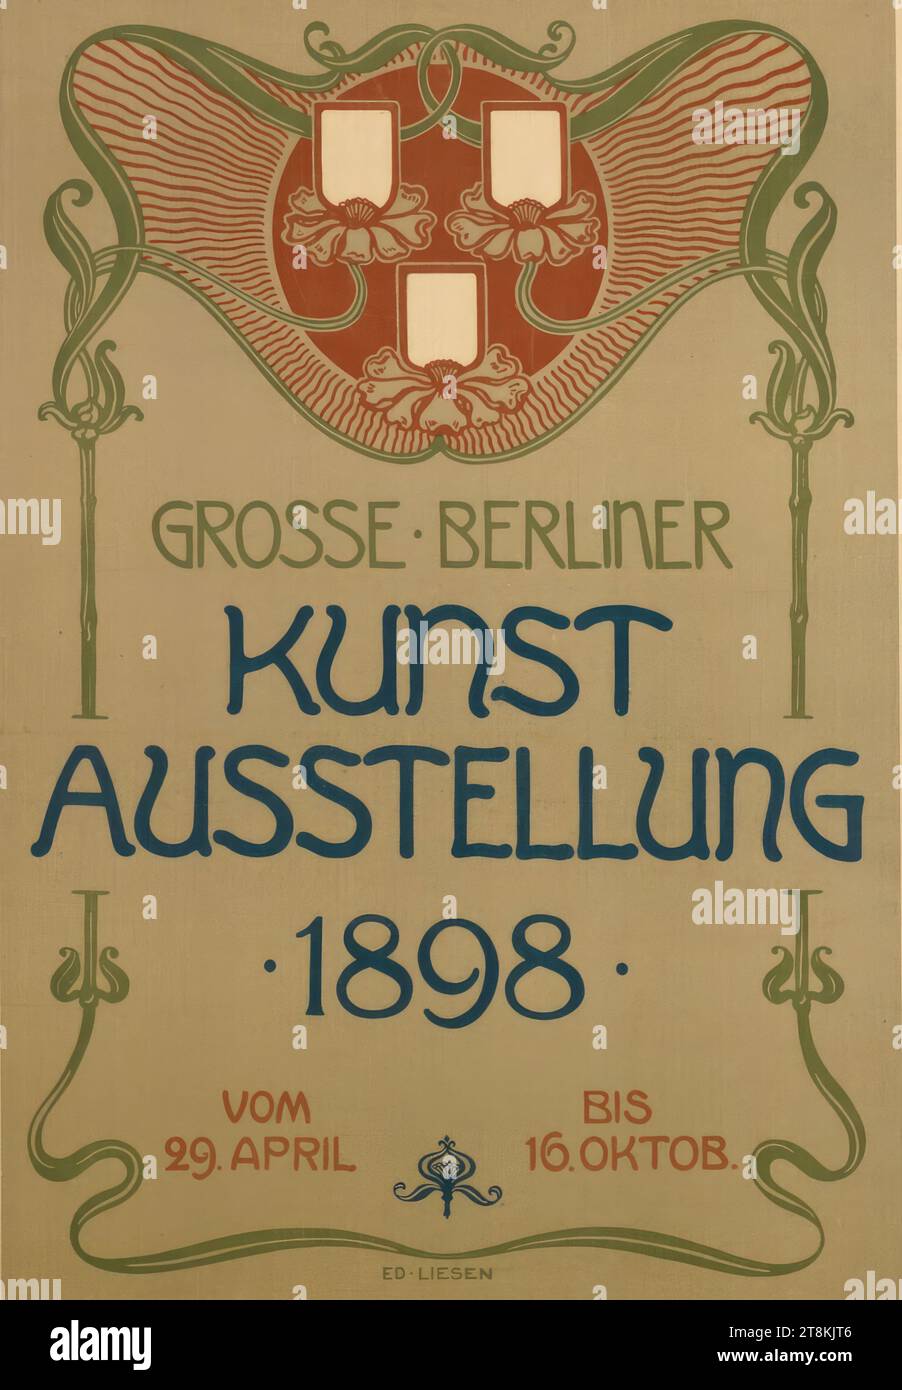 GREAT BERLIN ART EXHIBITION 1898, Eduard Liesen, Berlin 1866 - 1945 Berlin, 1898, print, color lithograph, sheet: 705 mm x 480 mm Stock Photo